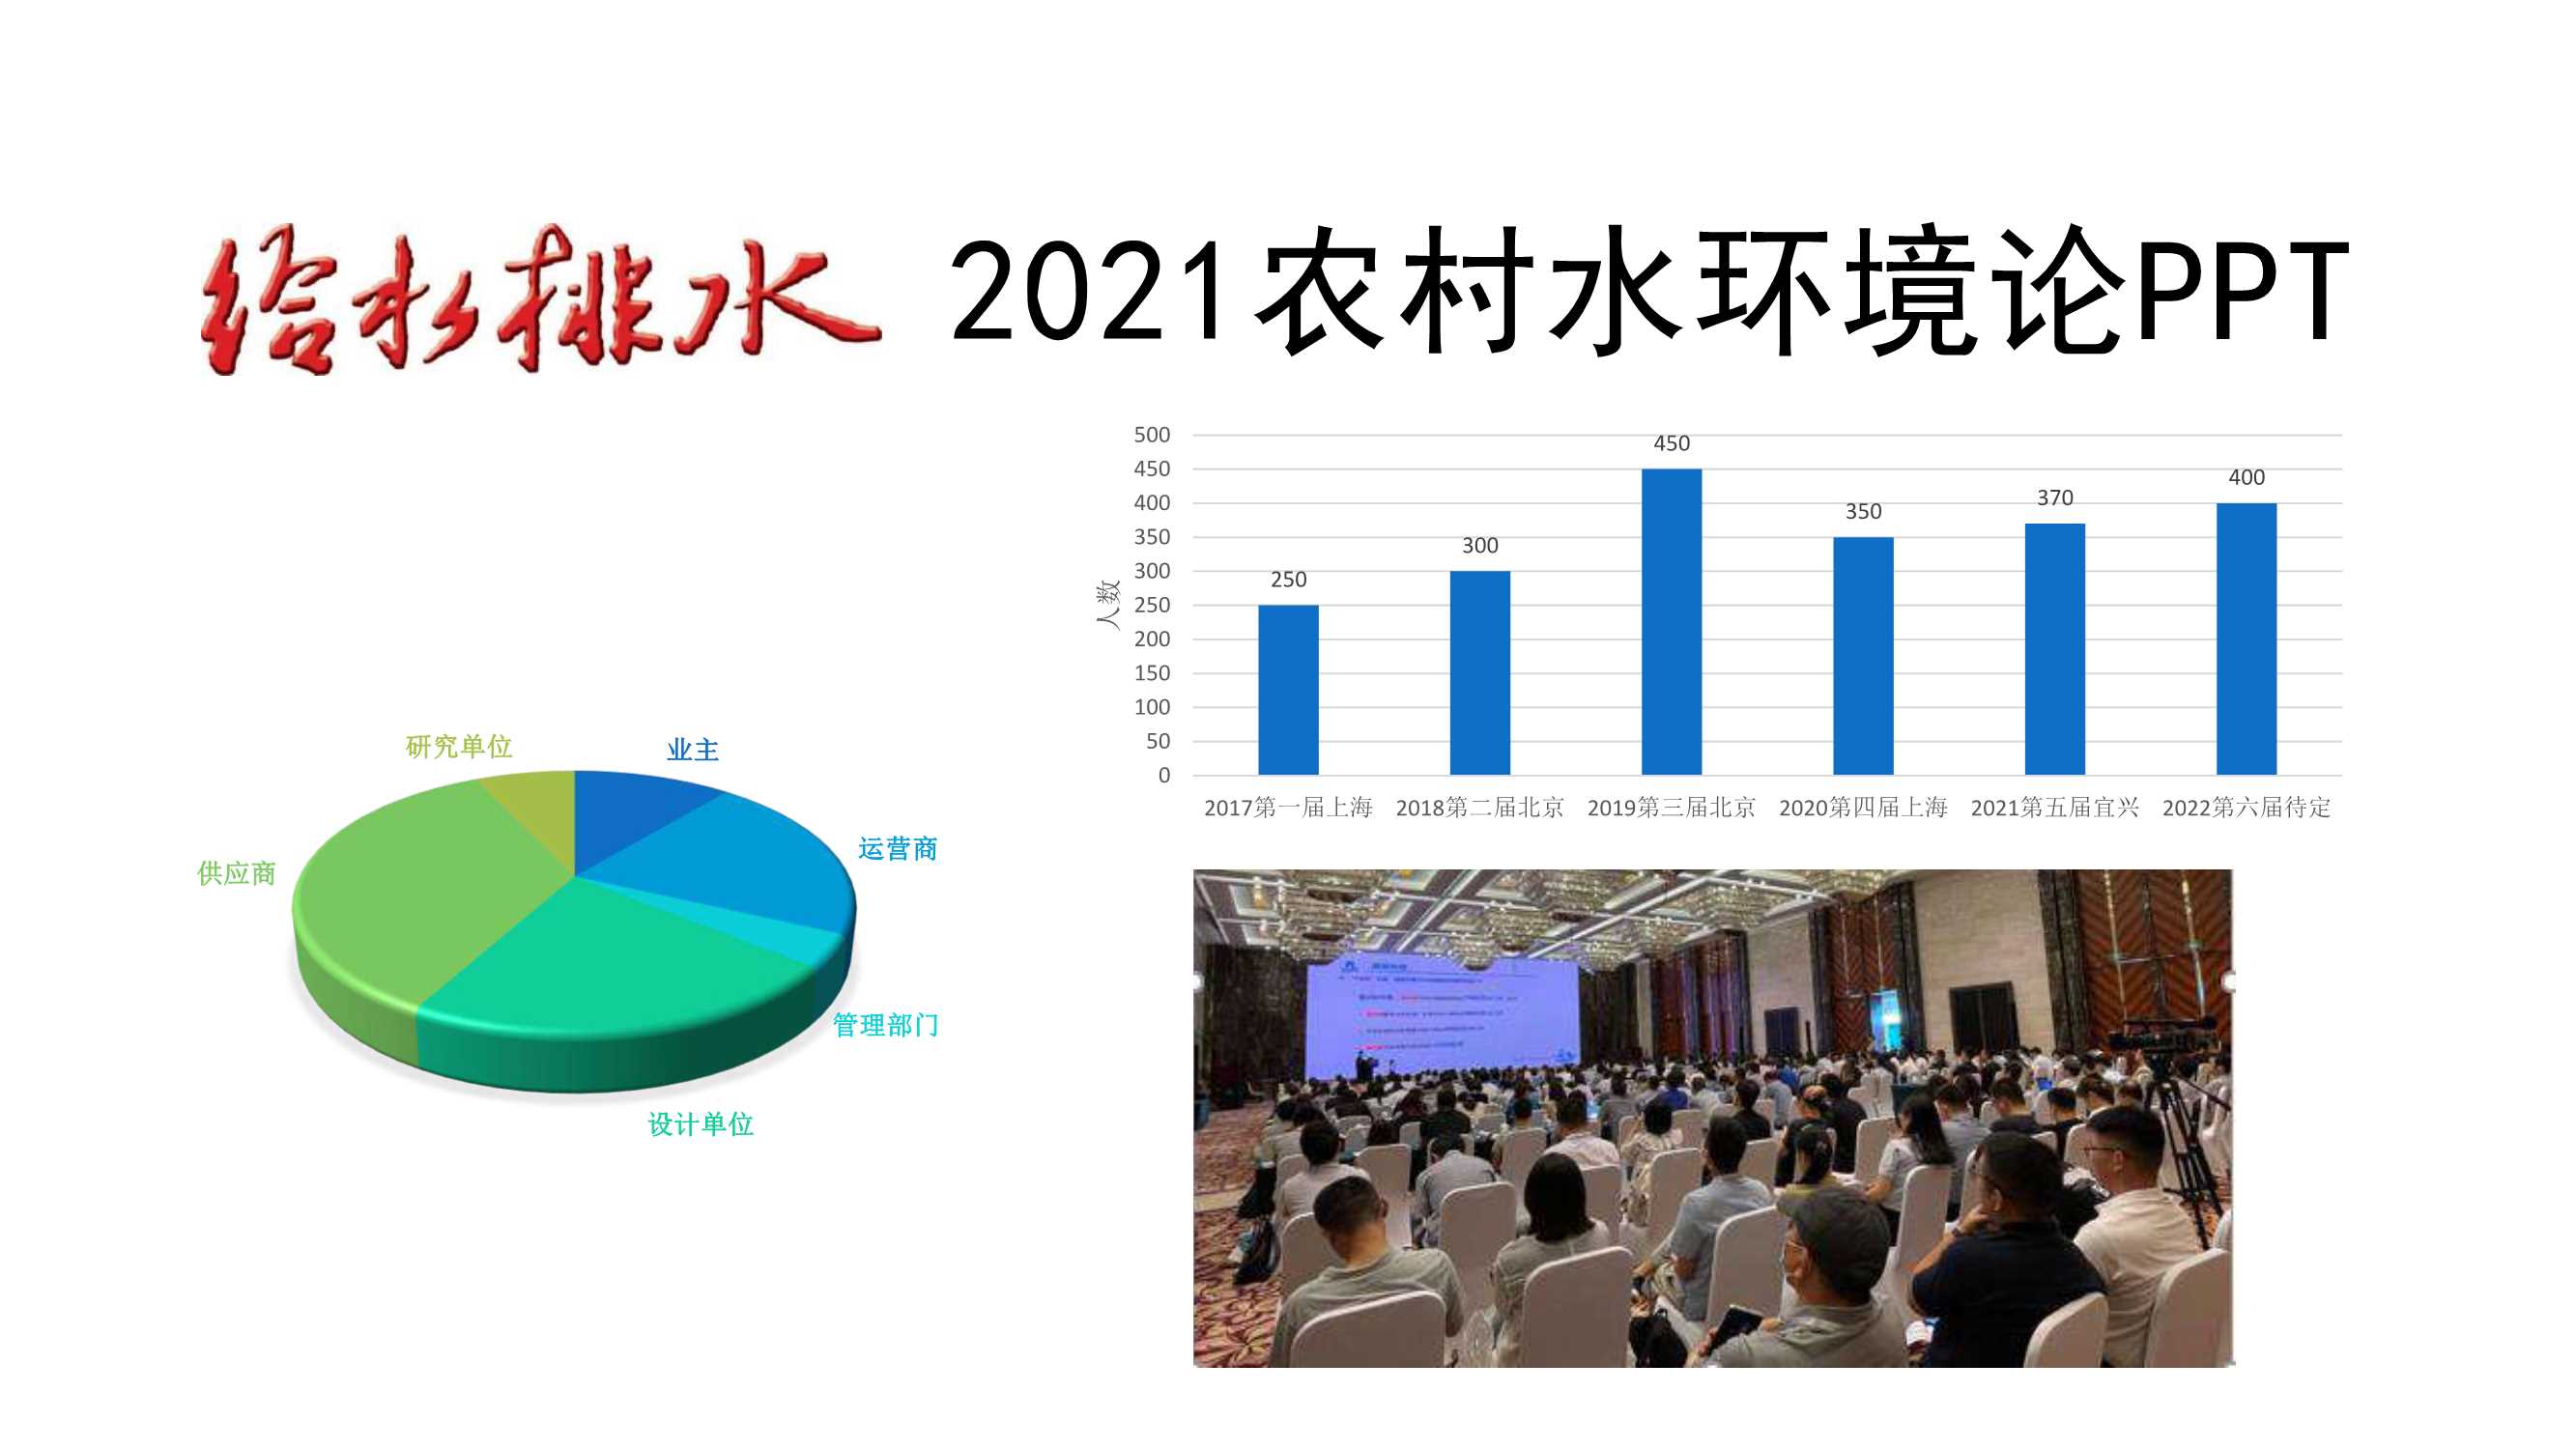 陈永-村镇污水设施现状与发展报告-技术路线与建设模式分析-2021.06-29页